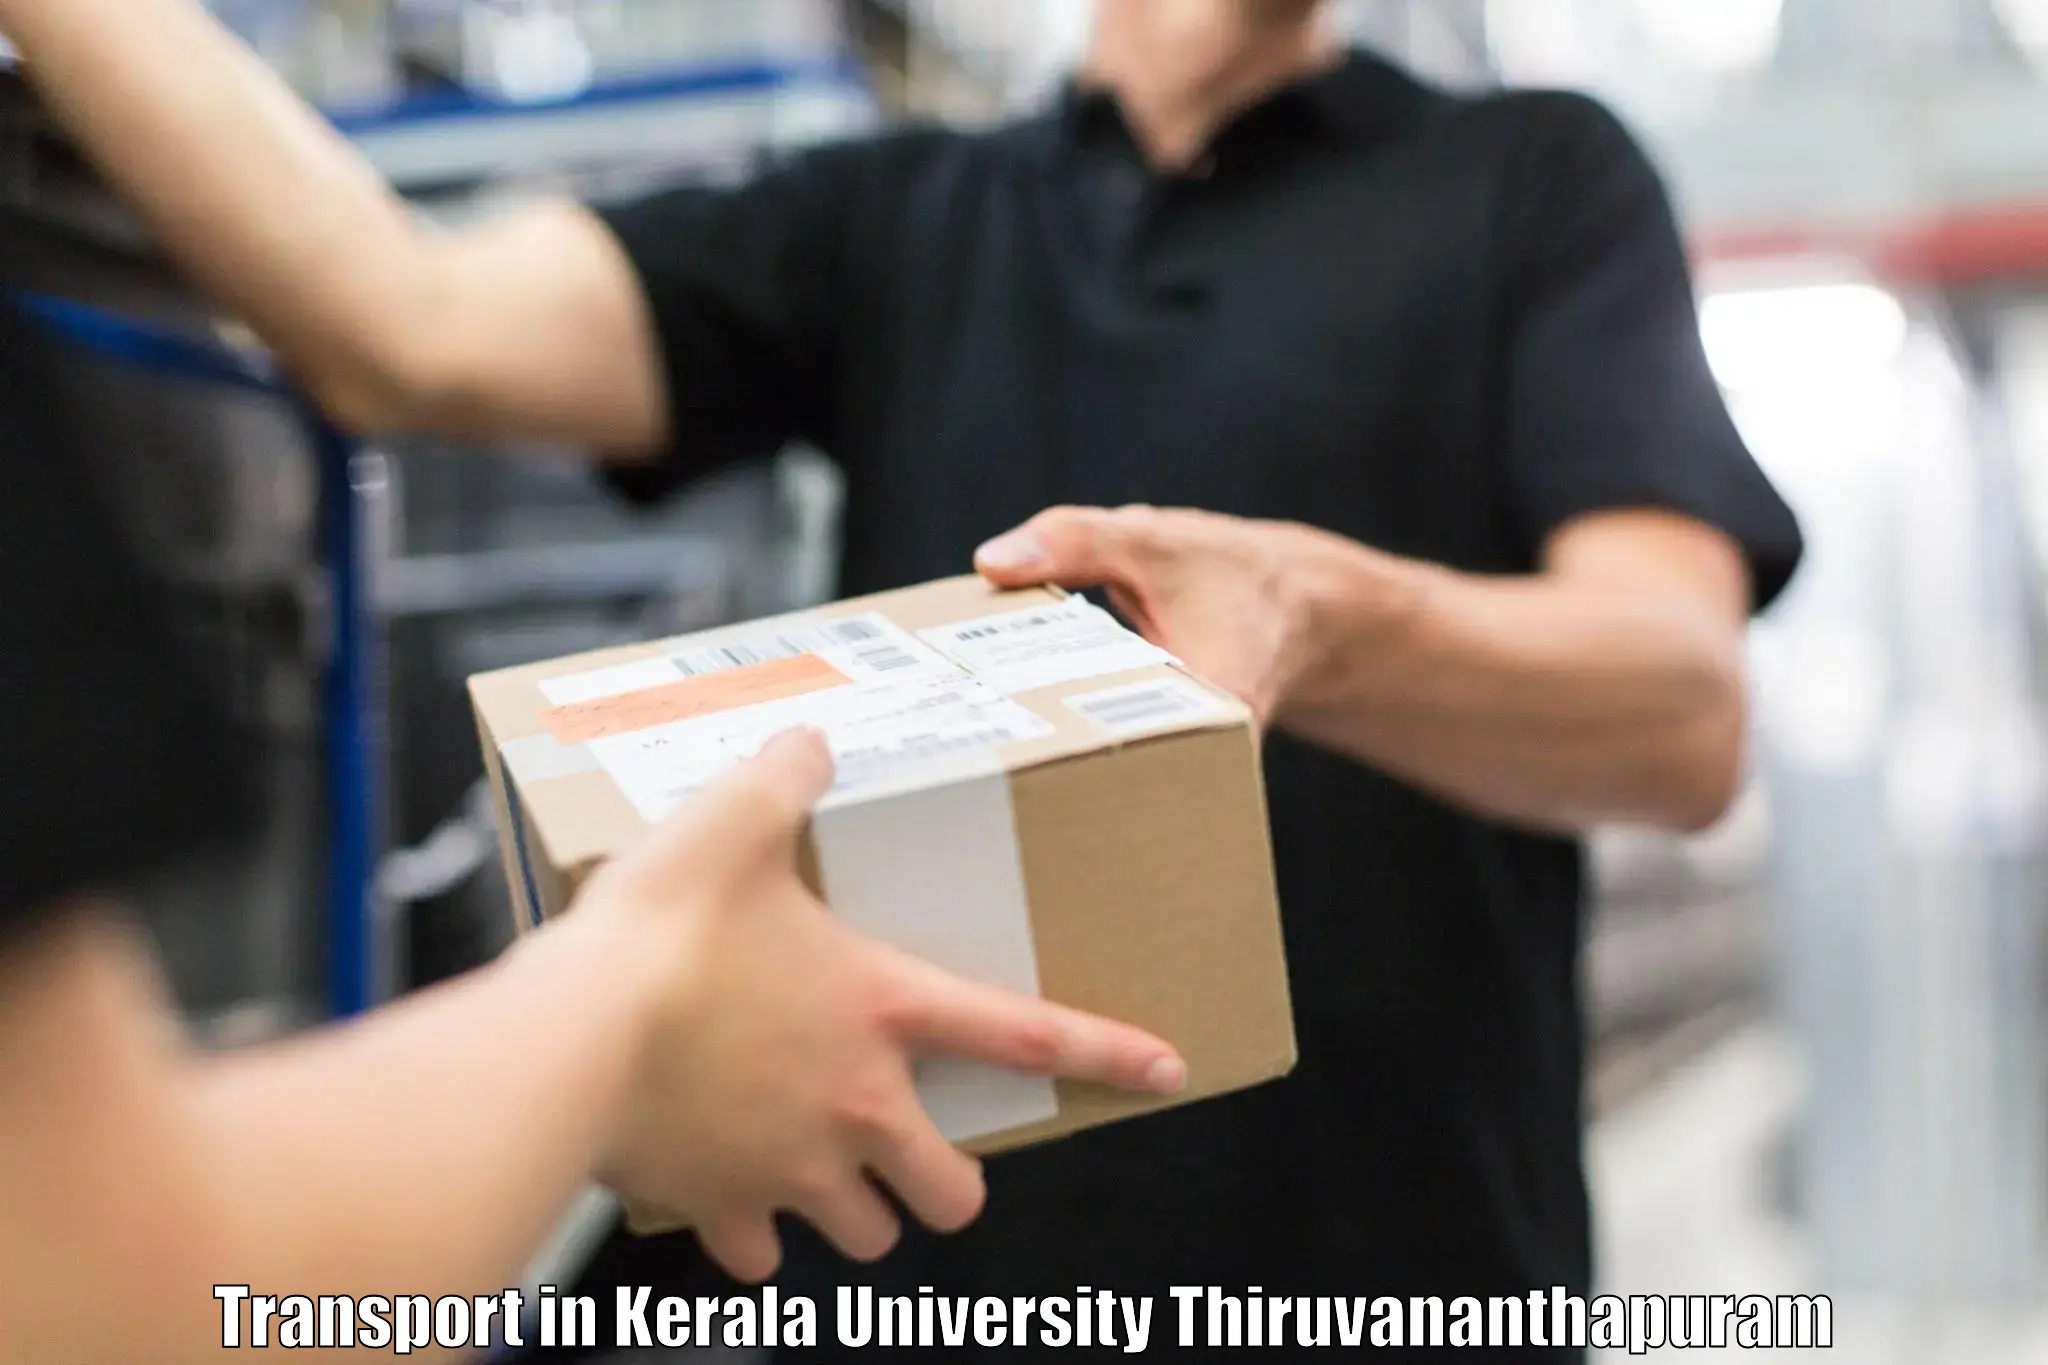 Truck transport companies in India in Kerala University Thiruvananthapuram